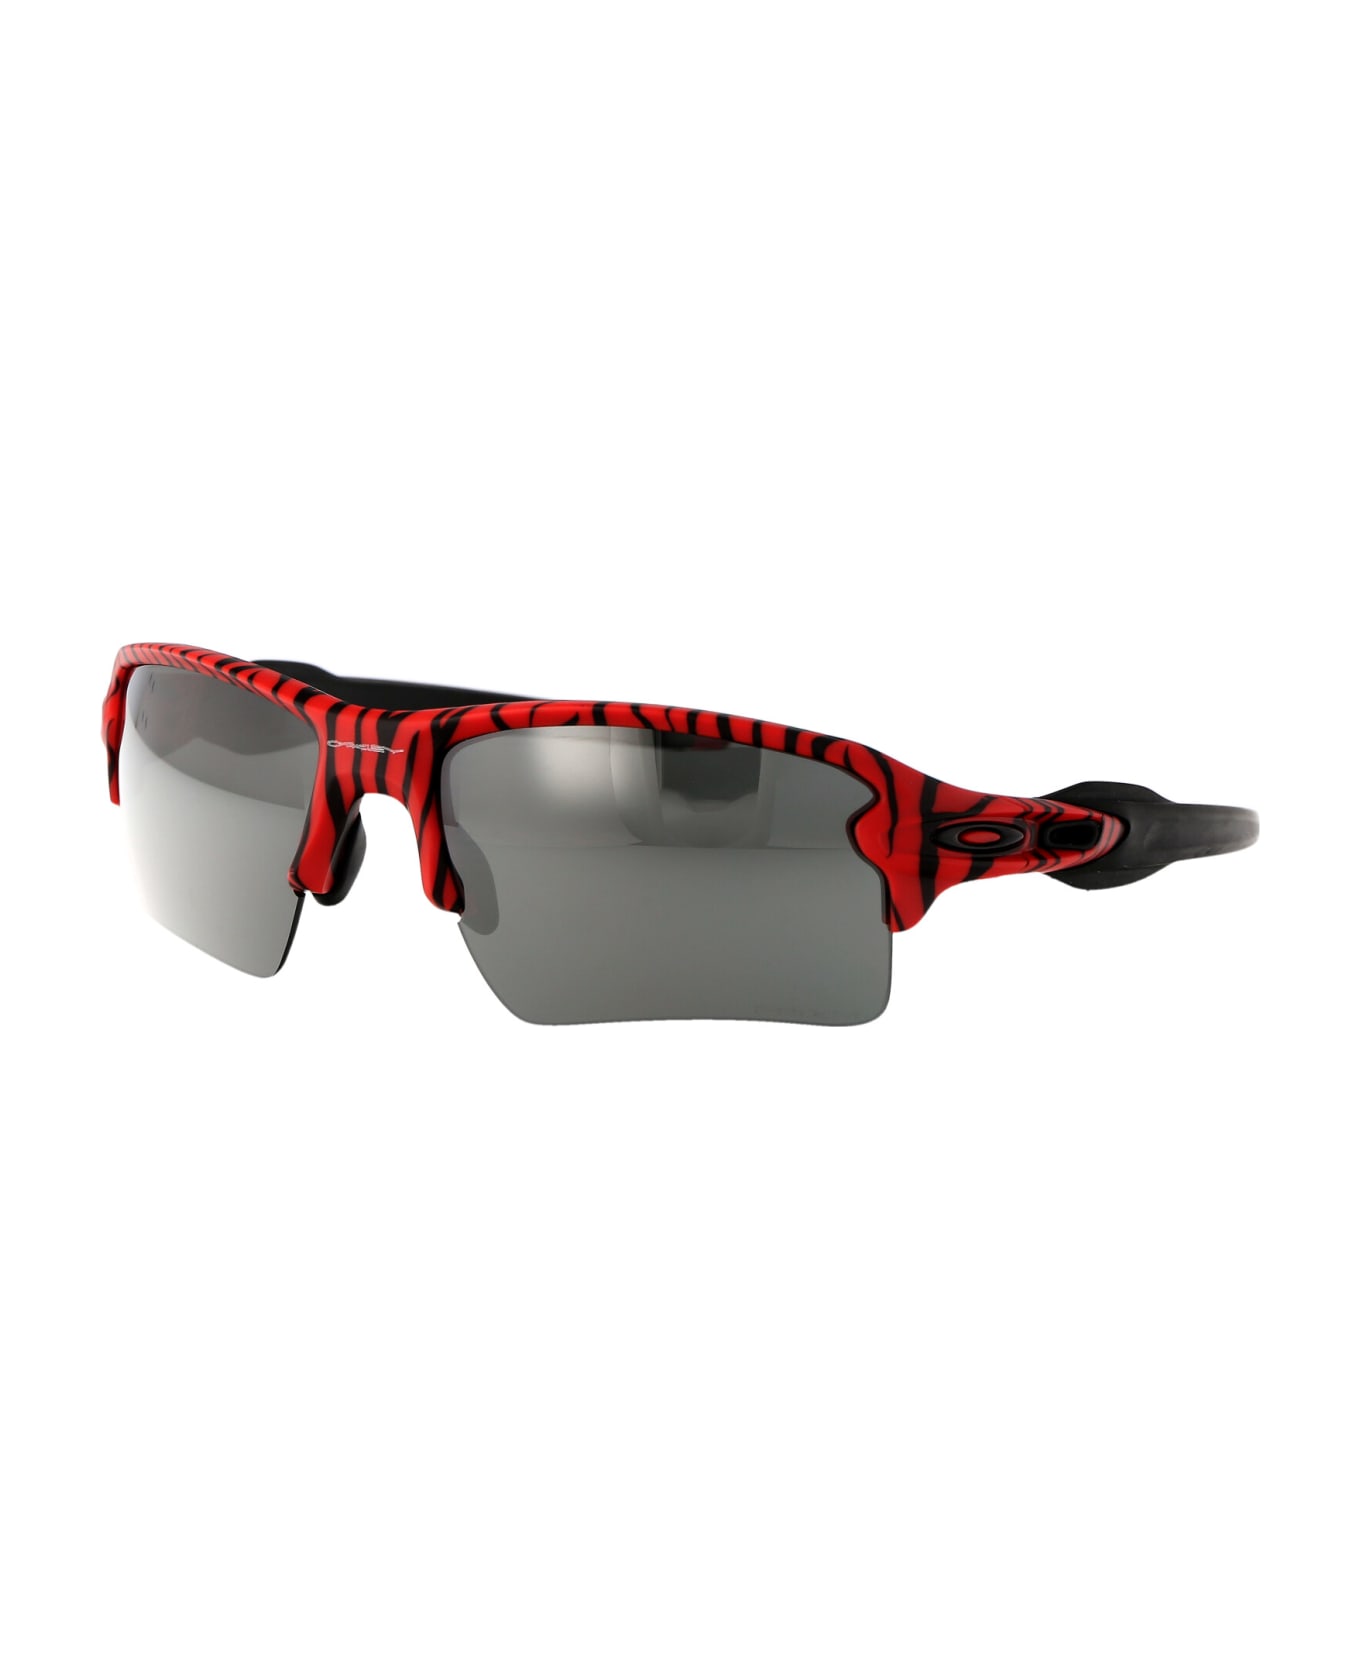 Oakley Flak 2.0 Xl Sunglasses - 9188H2 Red Tiger